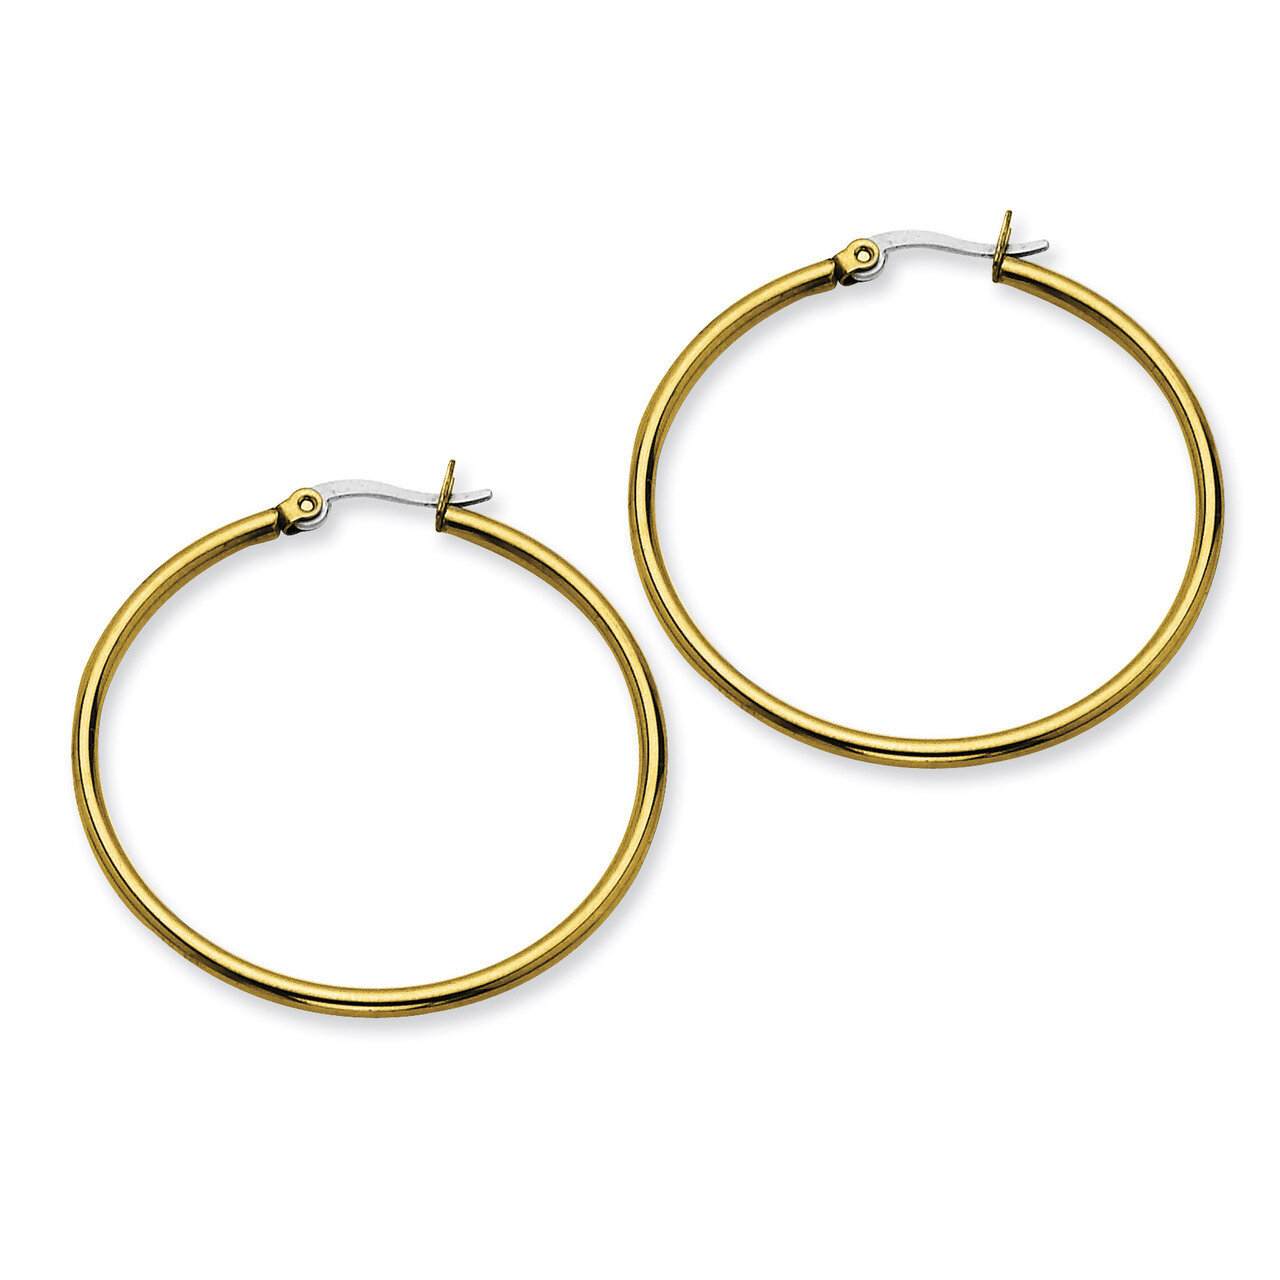 Gold IP plated 40mm Hoop Earrings - Stainless Steel SRE561